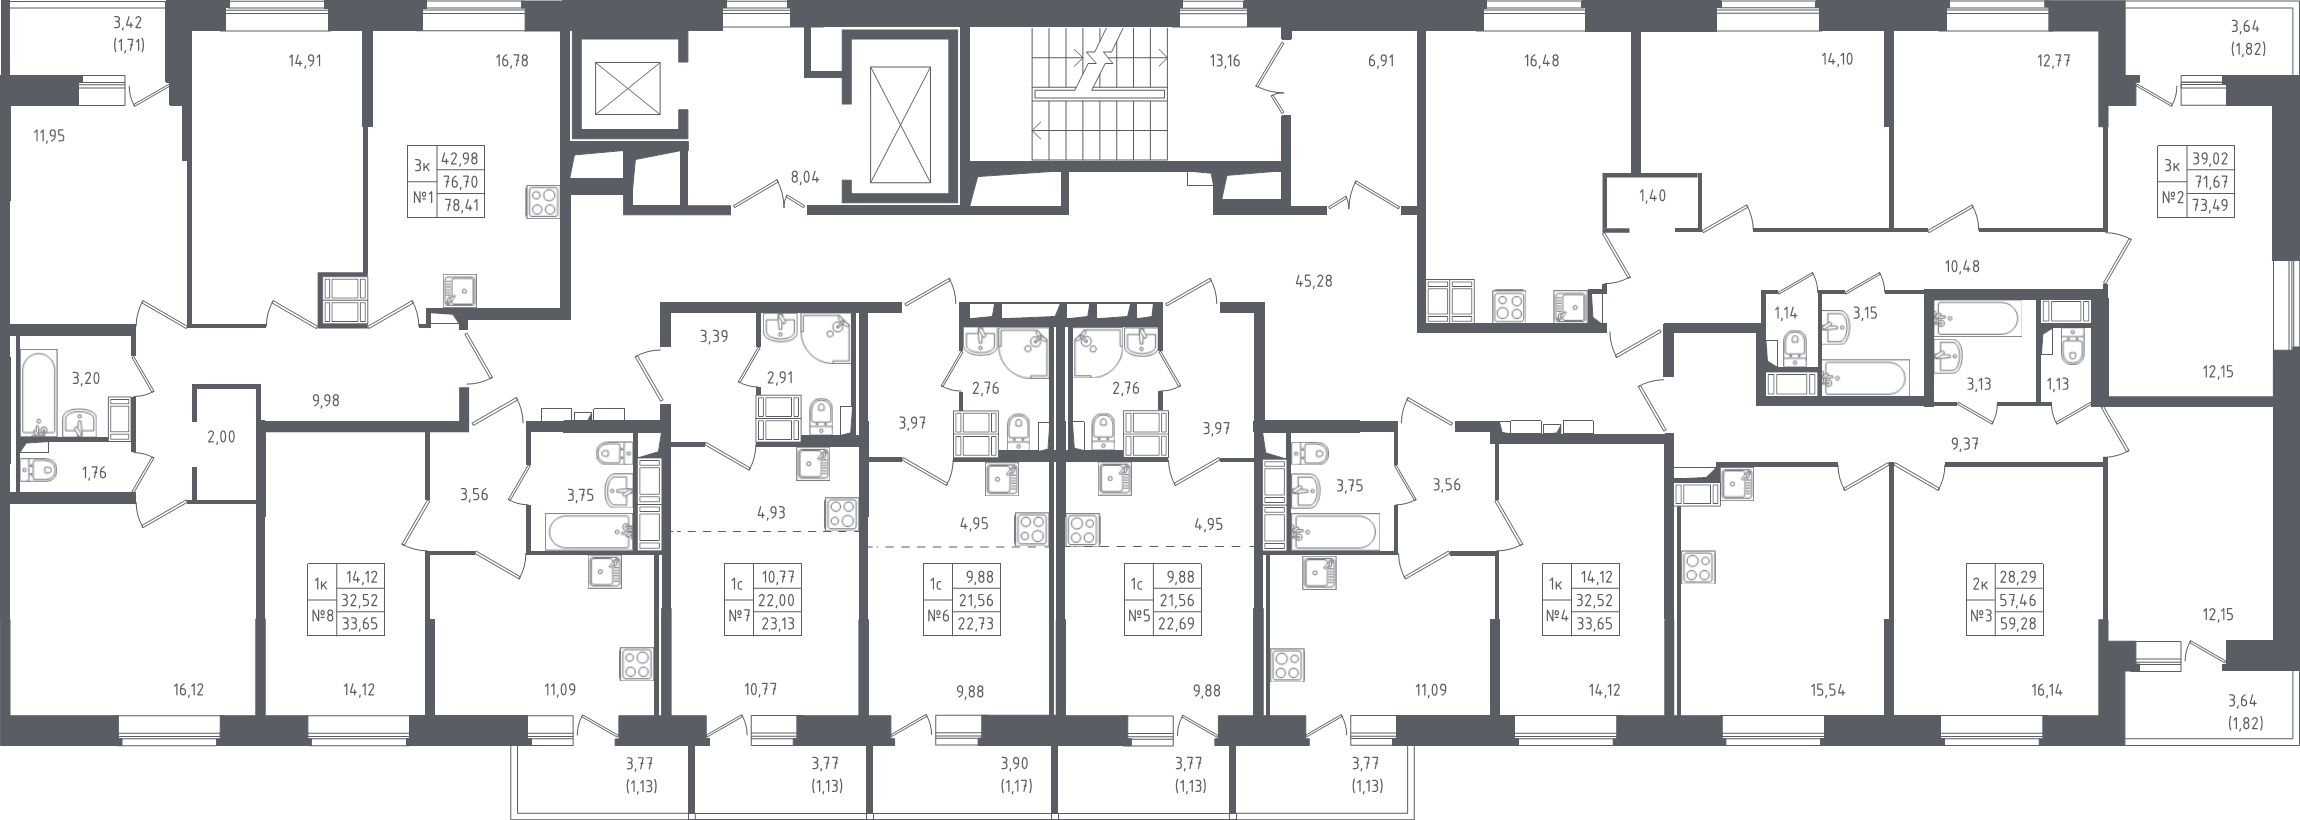 2-комнатная квартира, 59.28 м² в ЖК "Живи! В Рыбацком" - планировка этажа